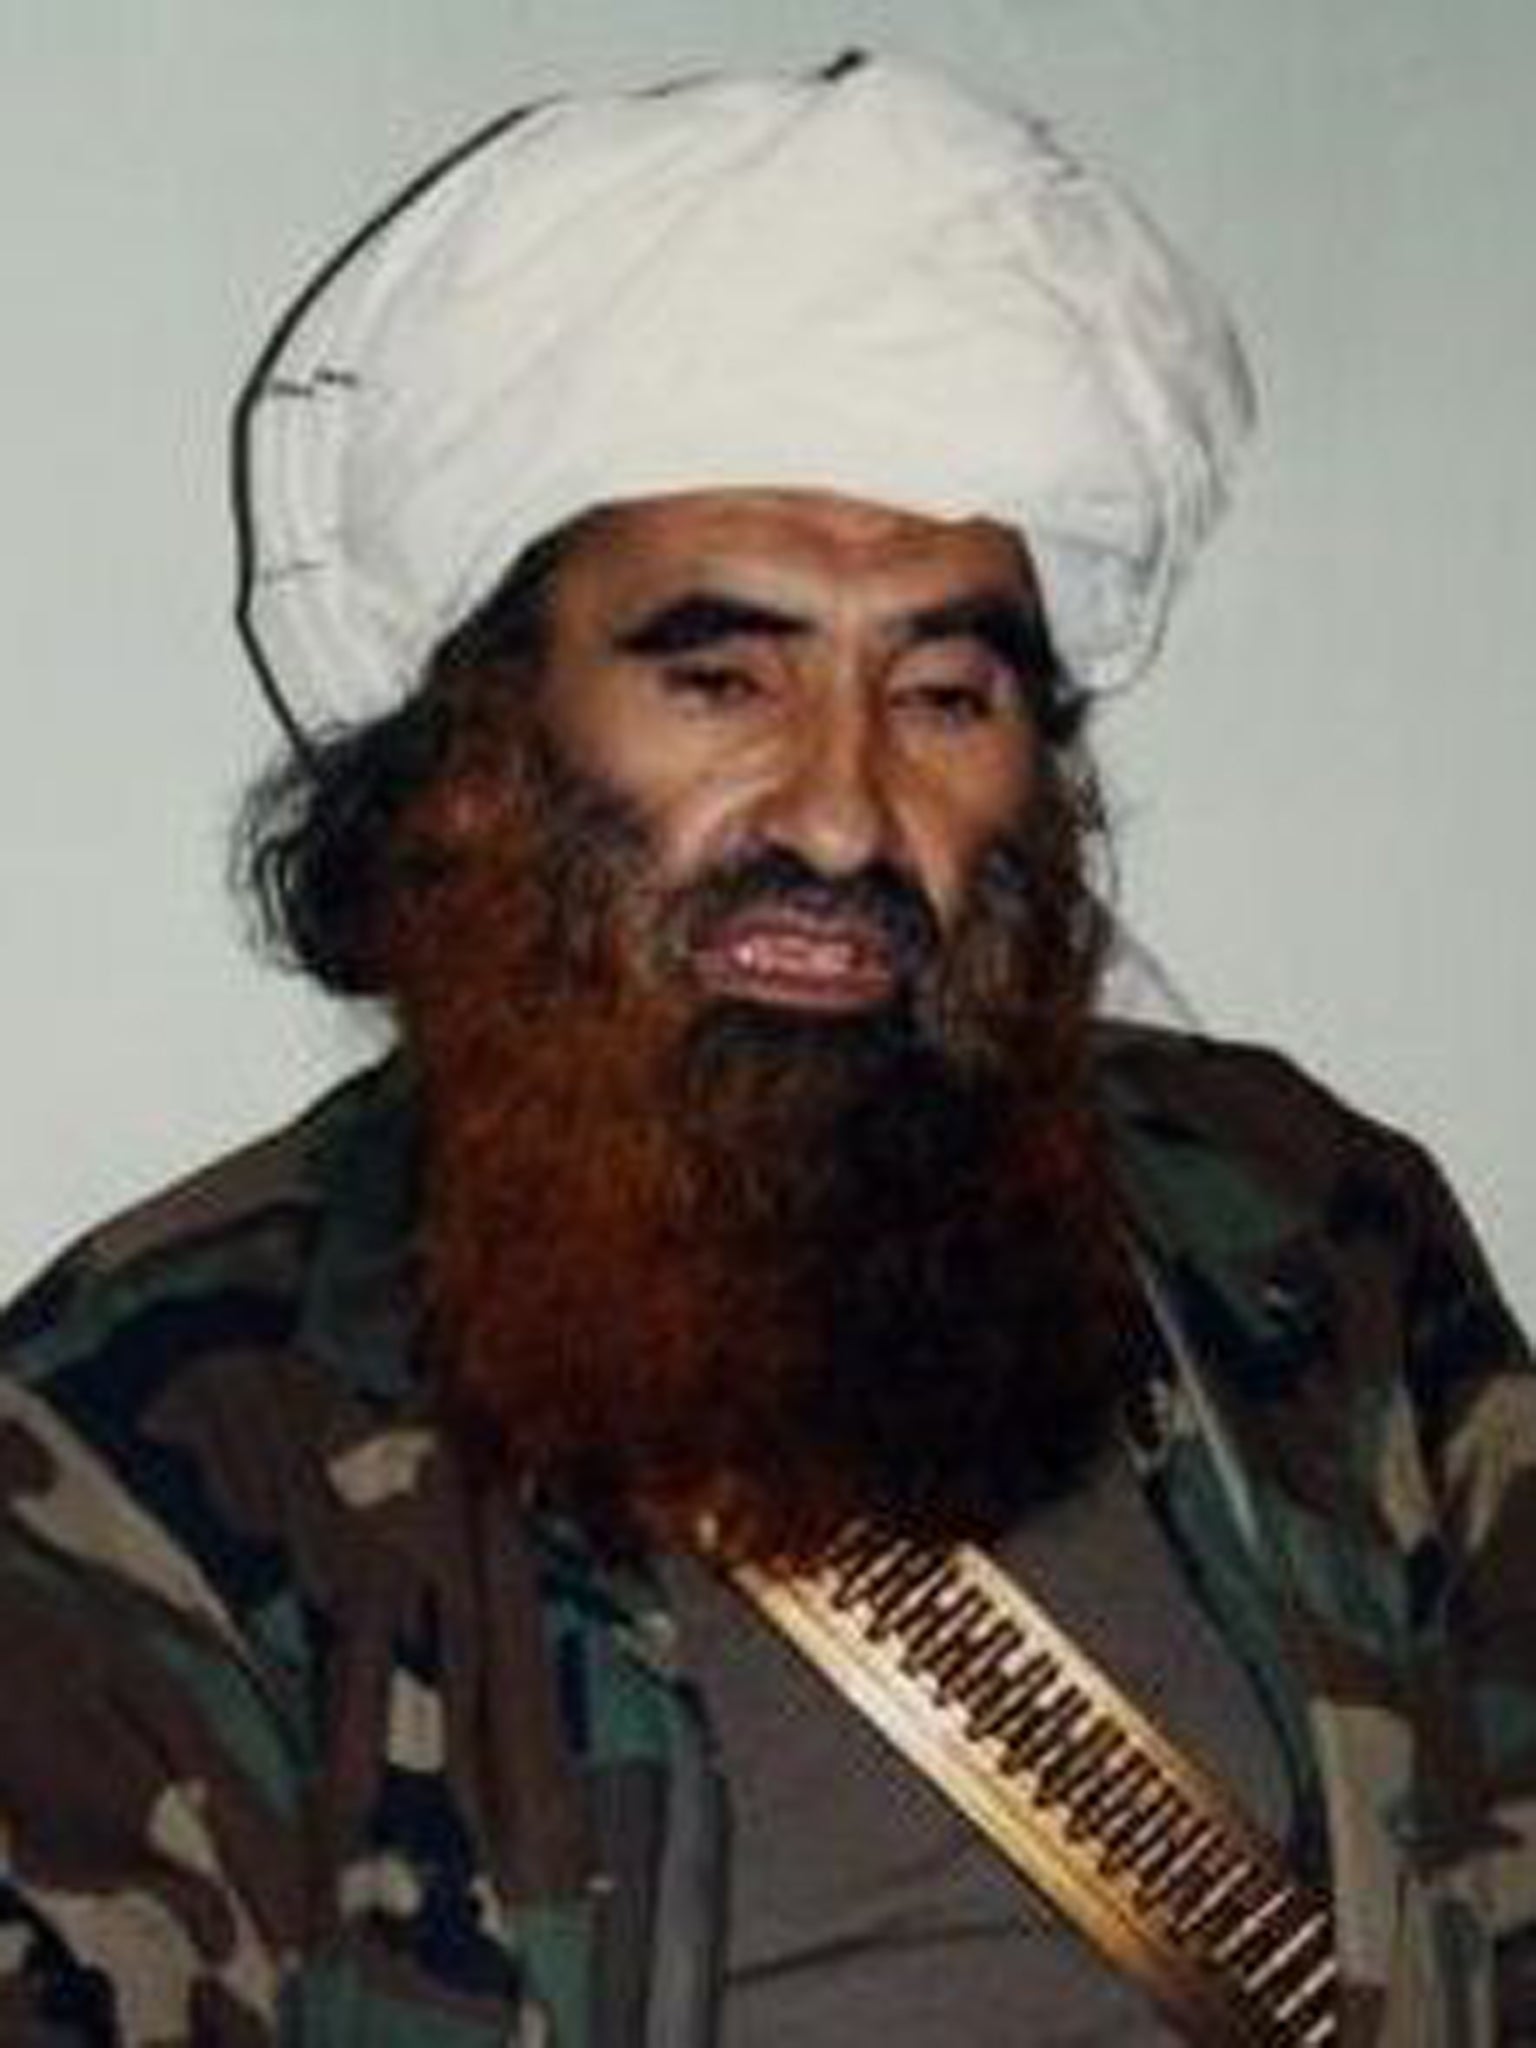 Nasiruddin Haqqani was said to be the main financier of the Taliban-linked Haqqani network militant group